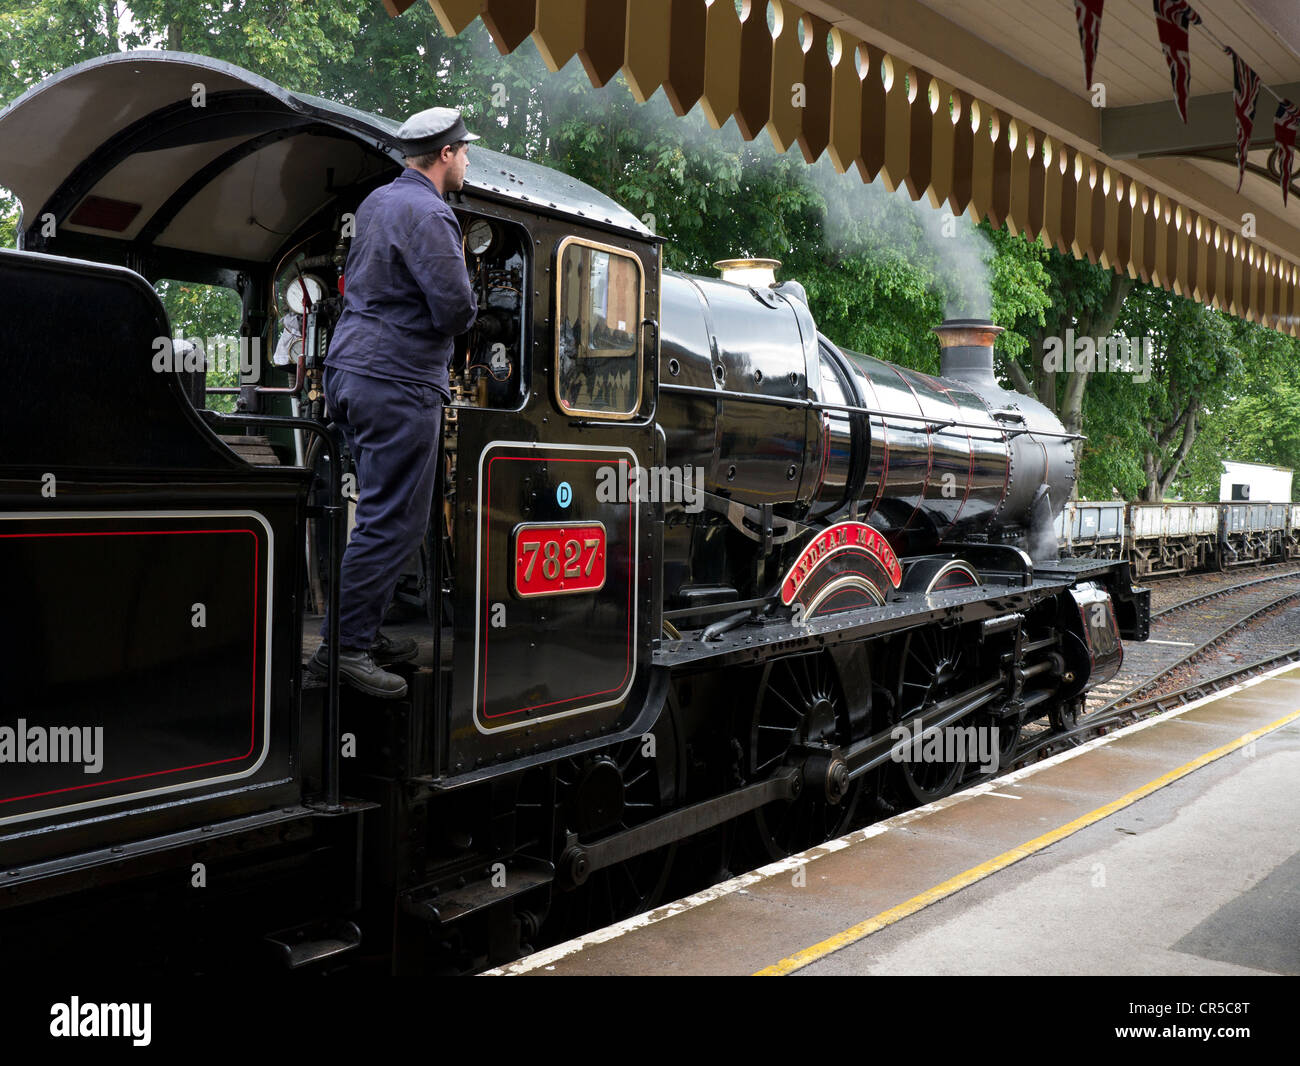 Immacolata locomotiva a vapore numero 7827 Lydham Manor in vapore a Paignton stazione ferroviaria con conducente Foto Stock